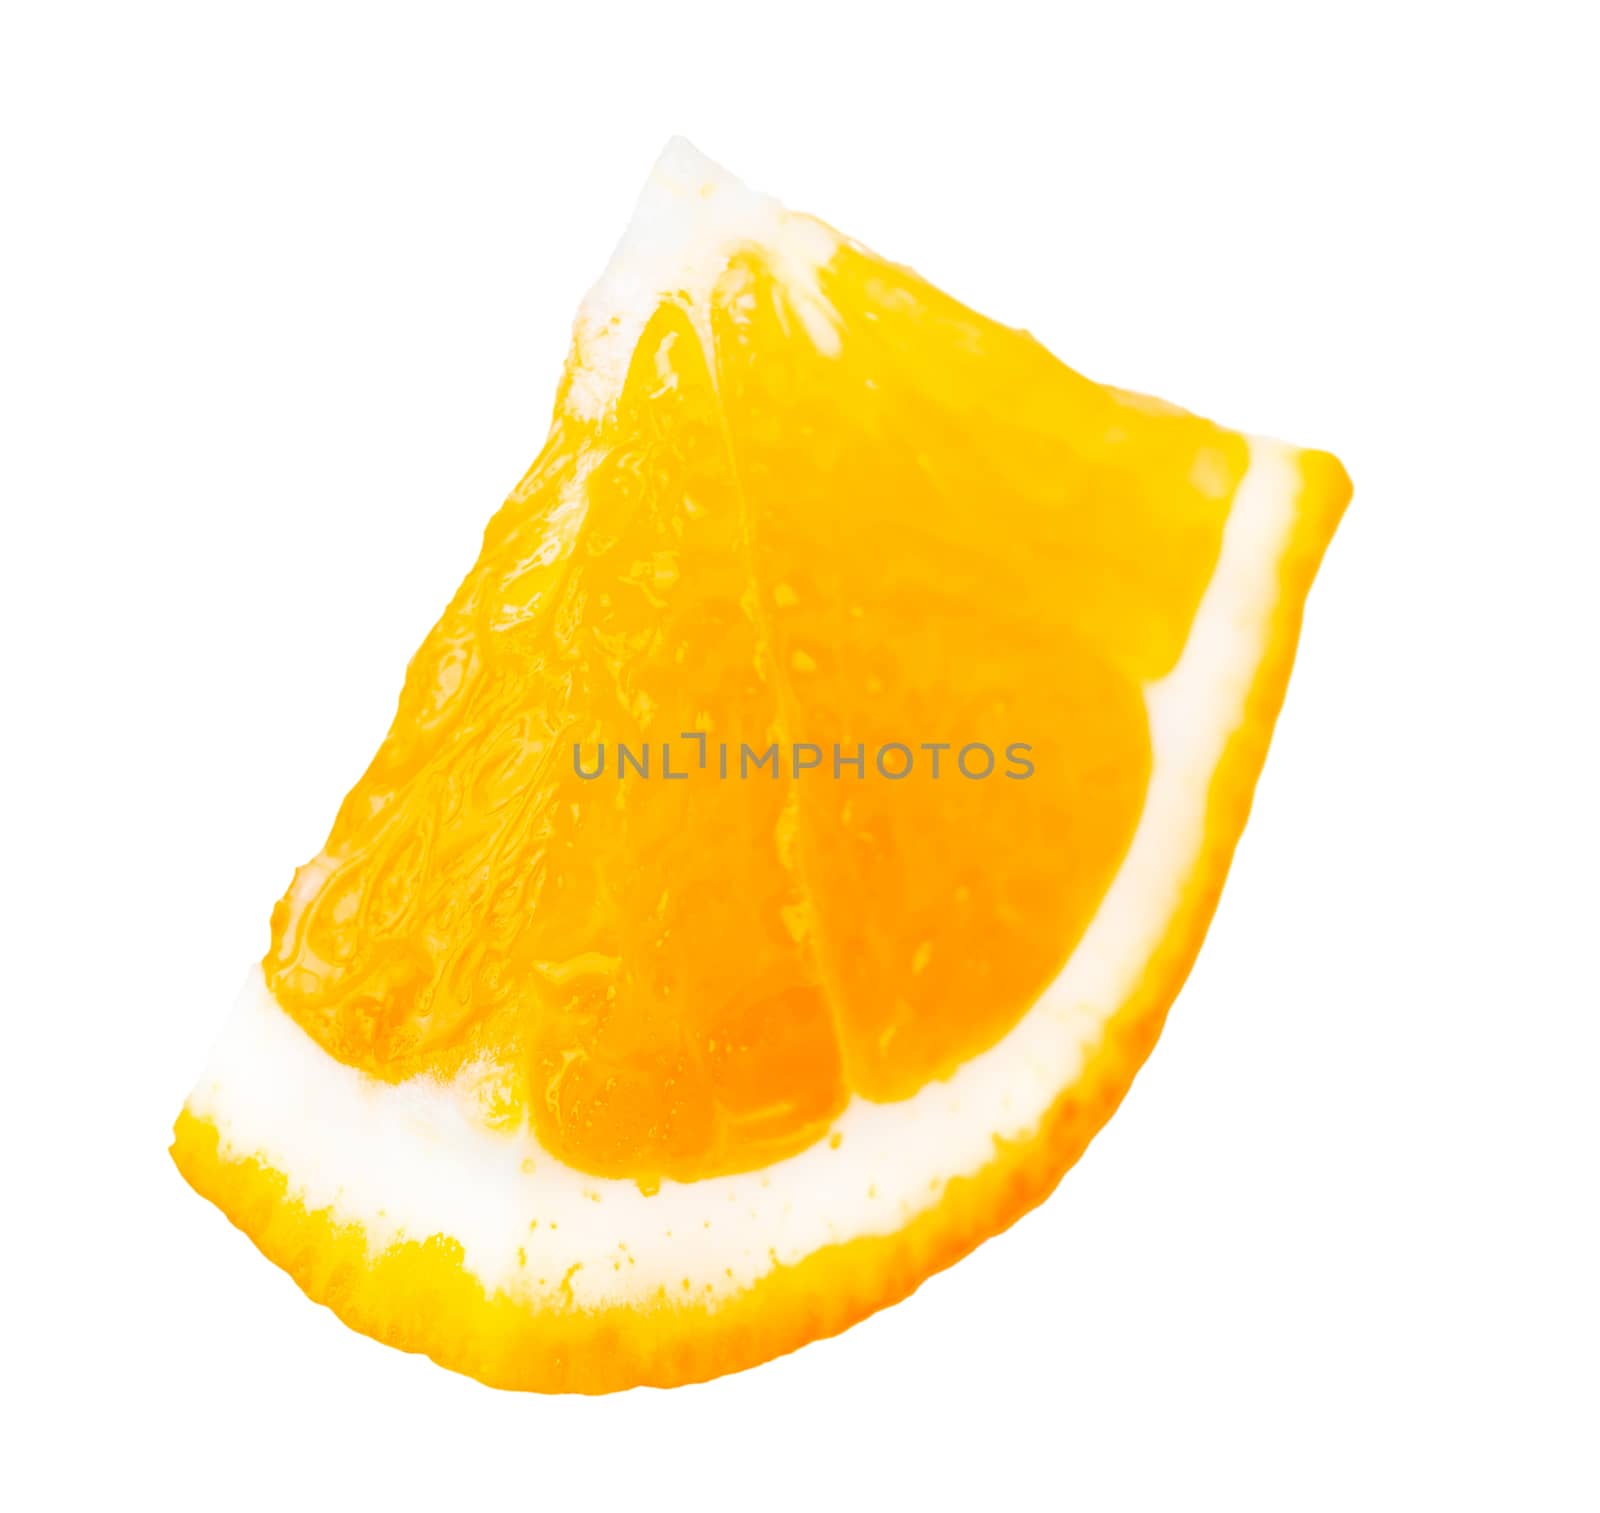 juicy part of orange closeup isolated on white background